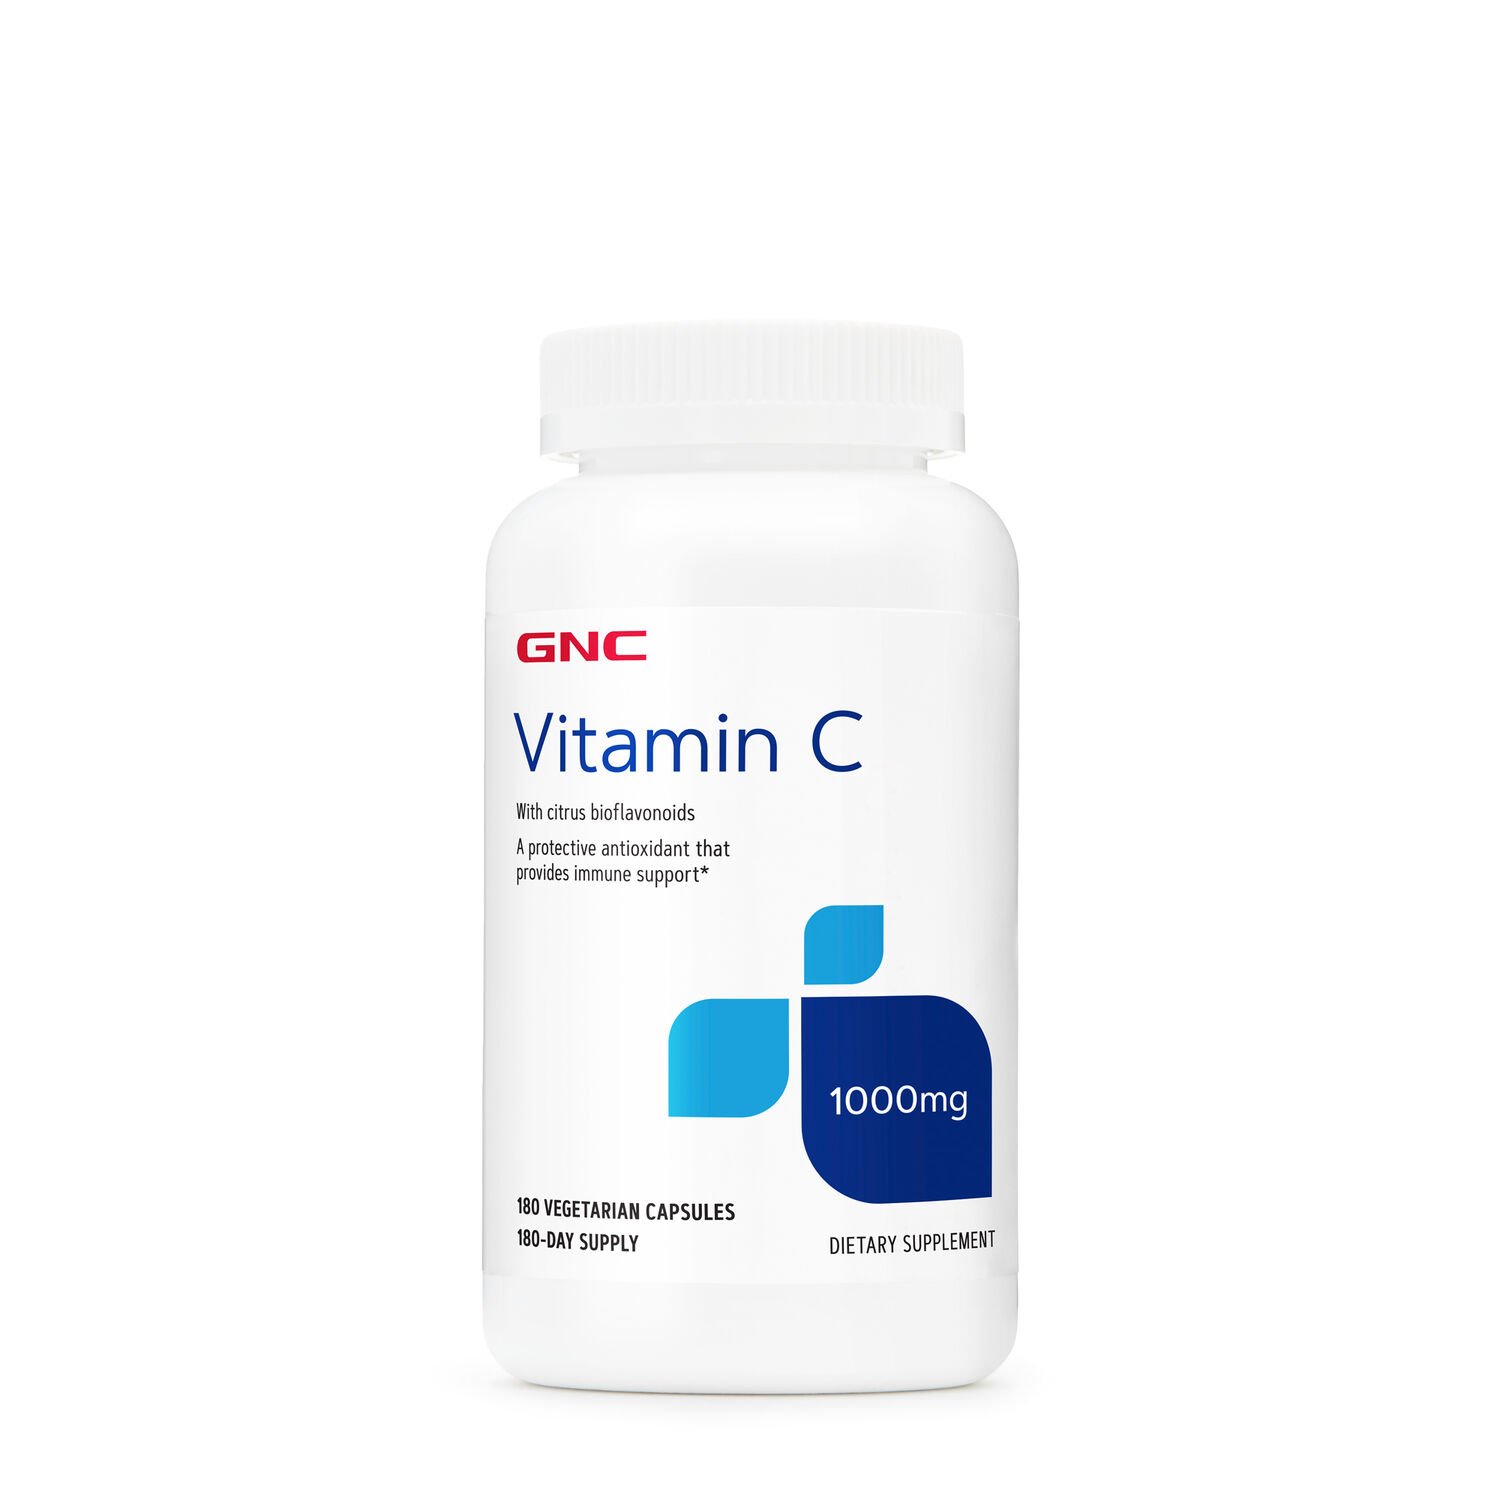 Gnc vitamin c